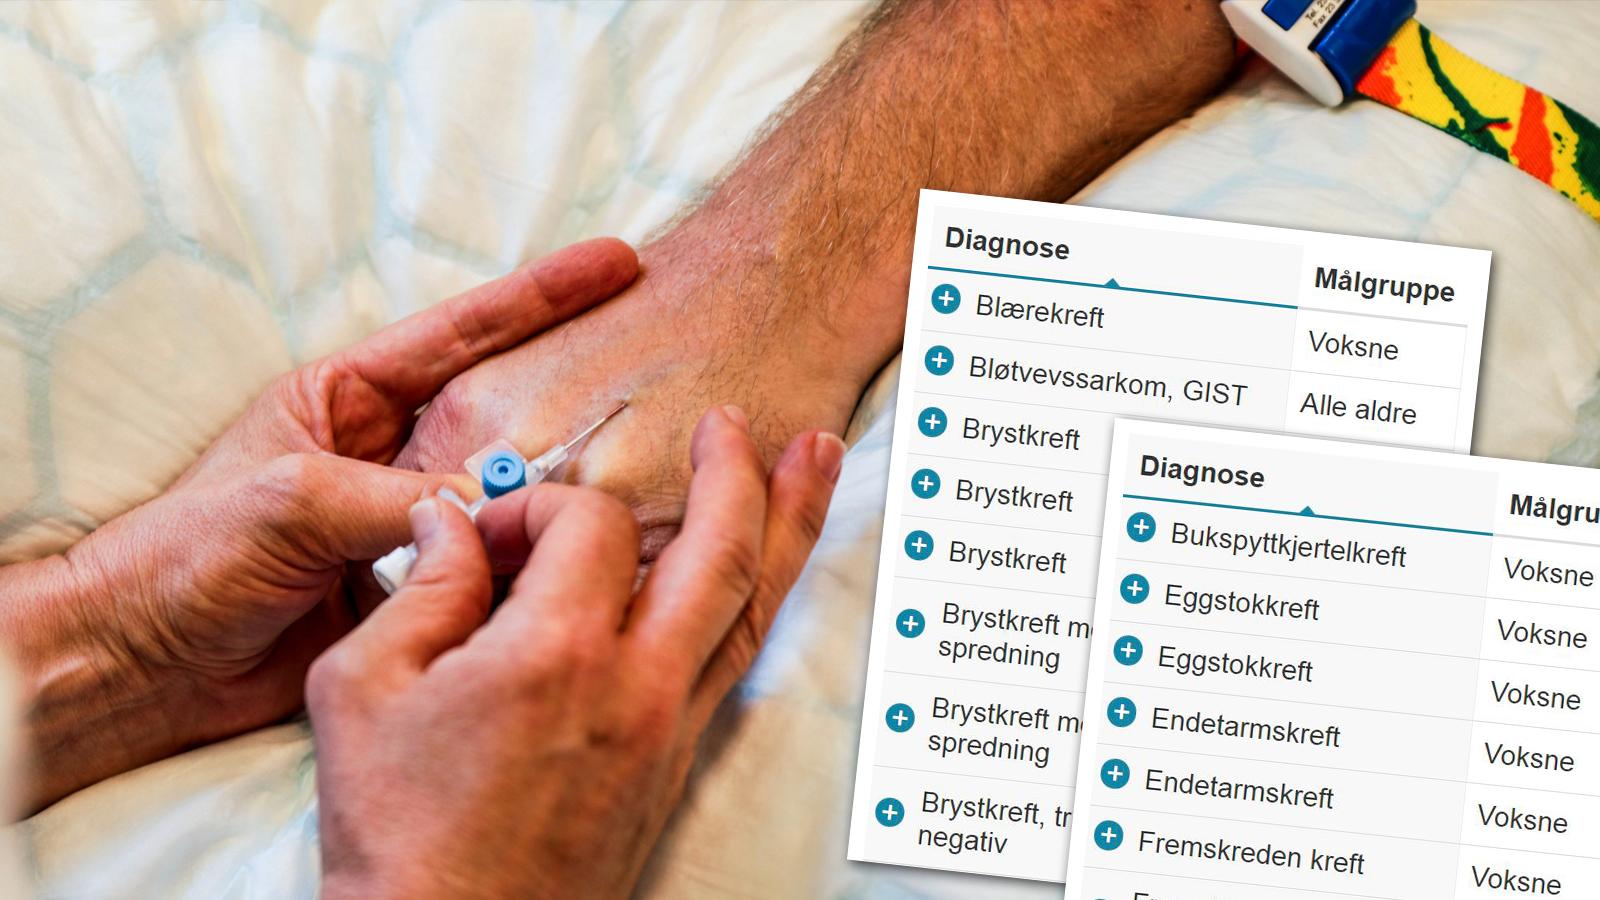  Den nye, nasjonale nettportalen Helsenorge.no skulle sikre norske pasienter enkel og oversiktlig informasjon om utprøvende behandling.